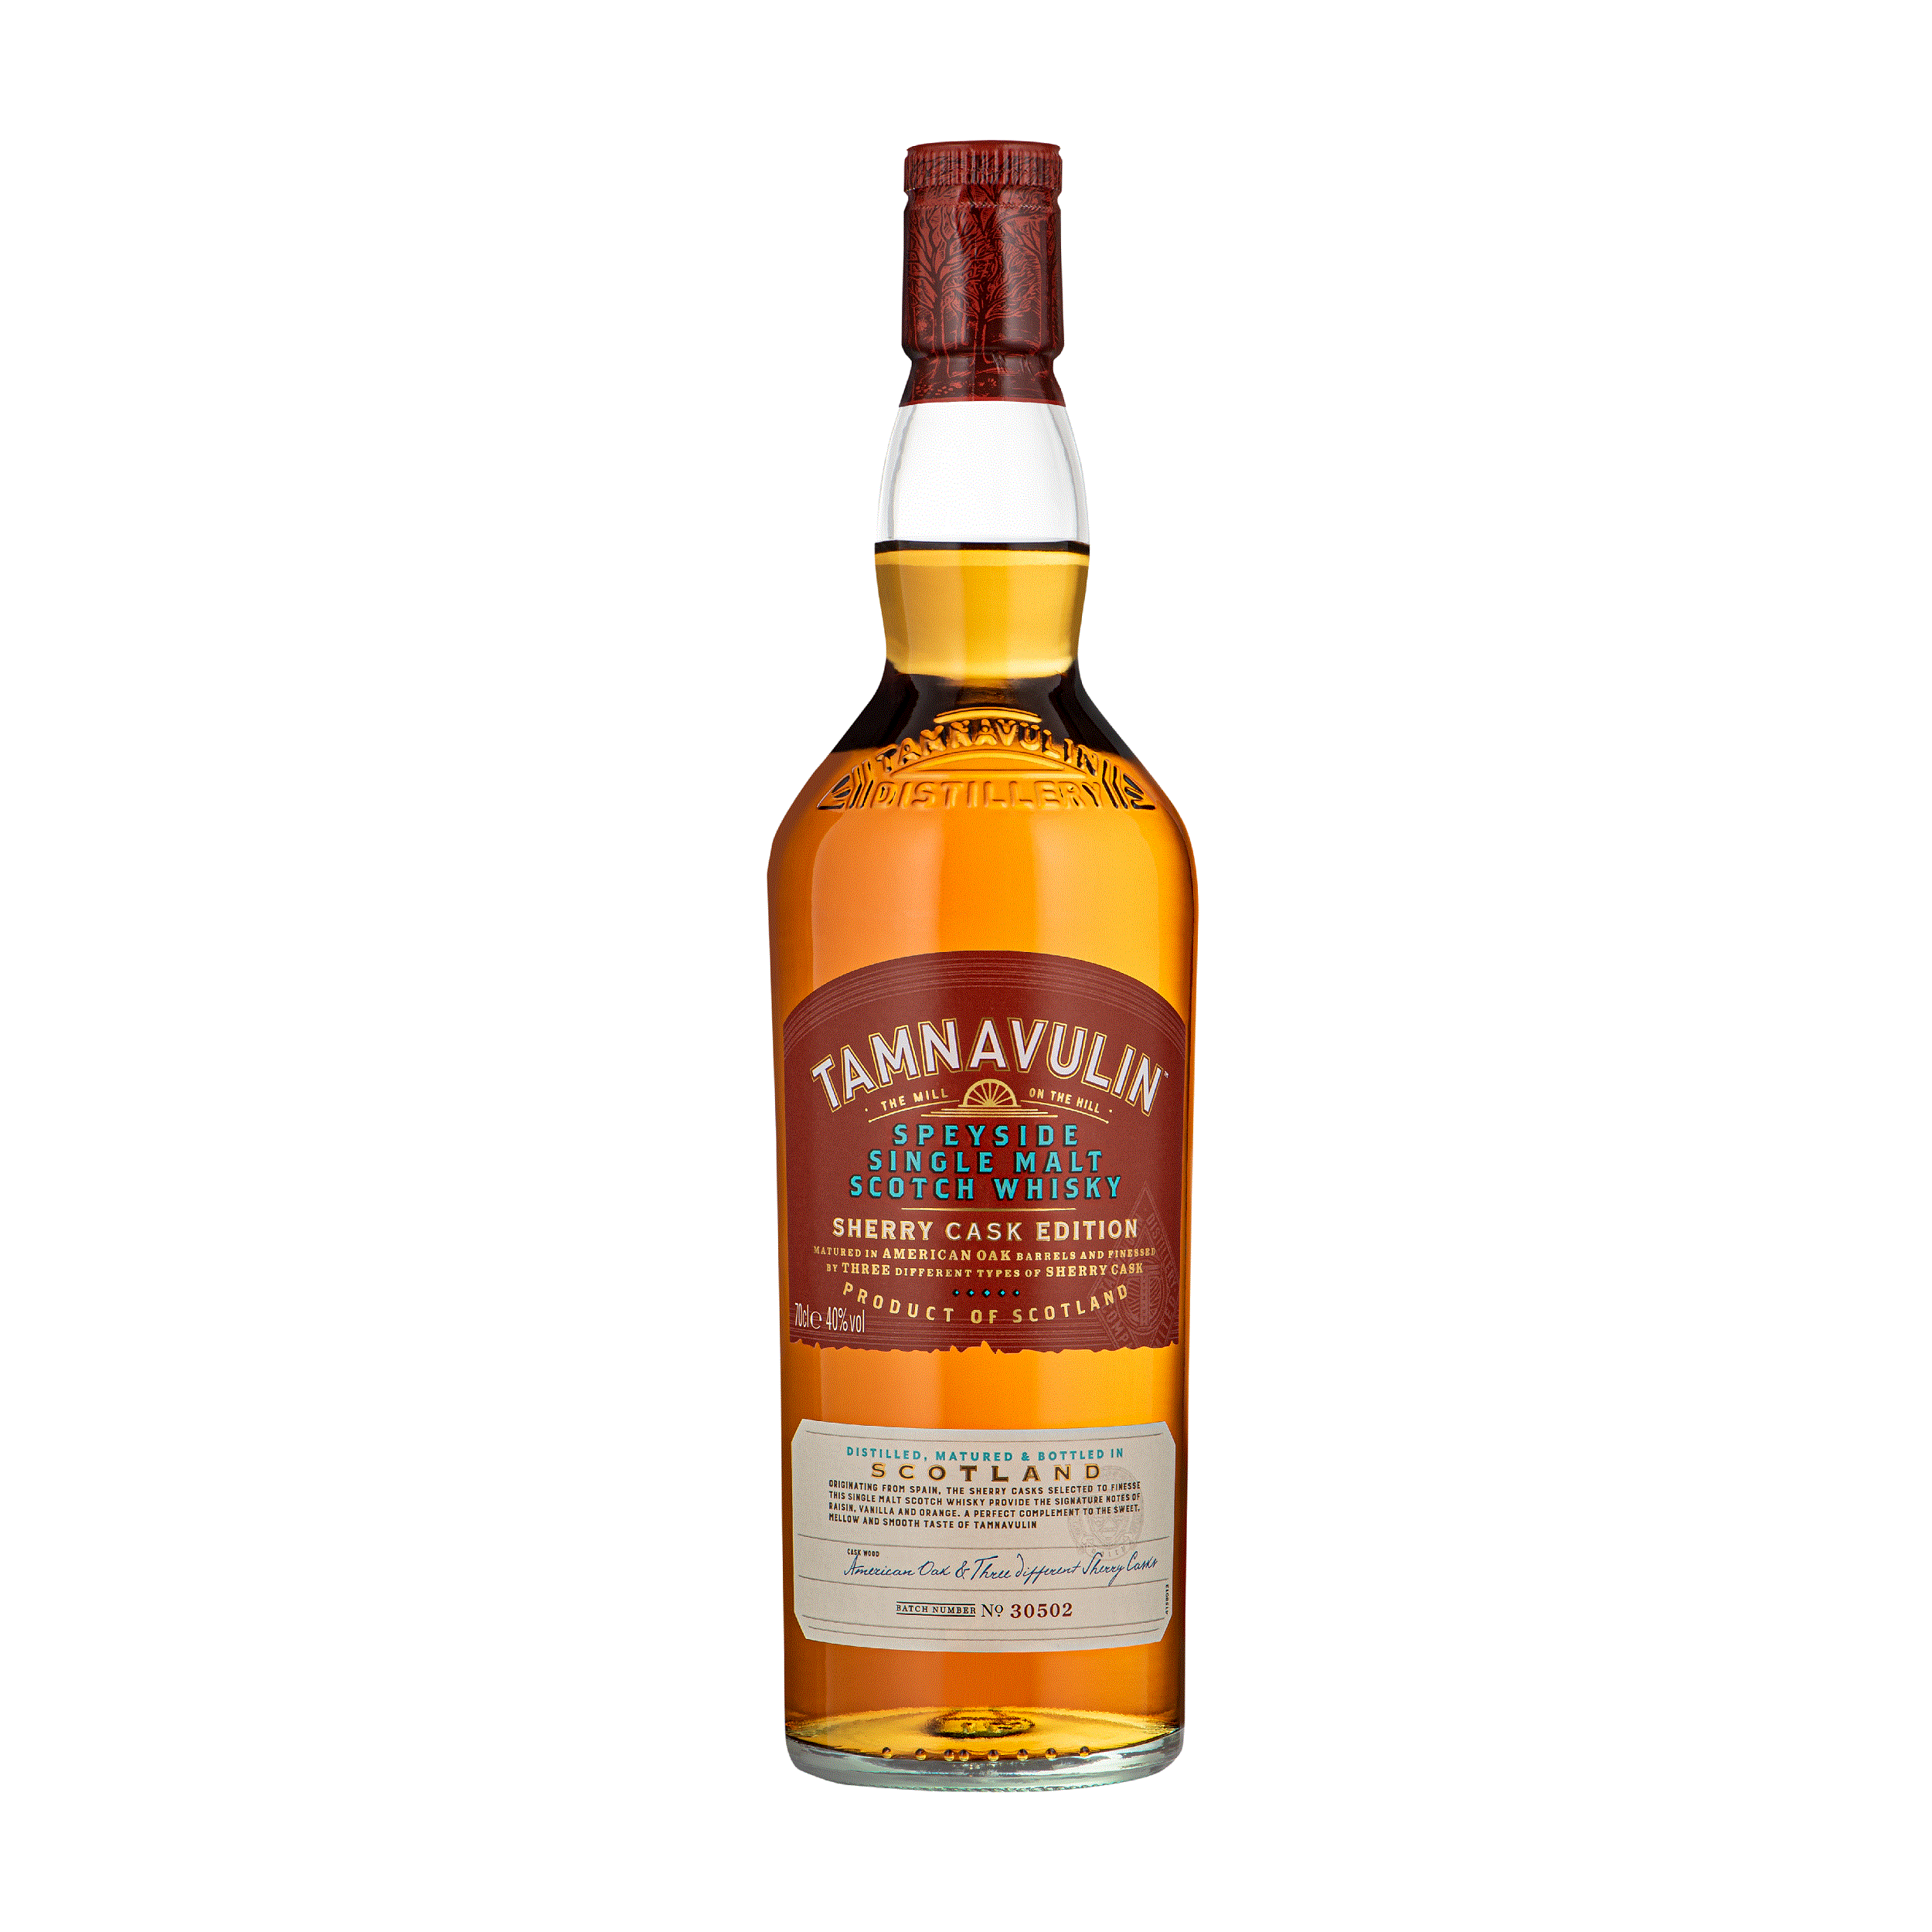 塔木岭雪莉桶单一麦芽威士忌 Tamnavulin Sherry Cask Edition Speyside Single Malt Scotch Whisky